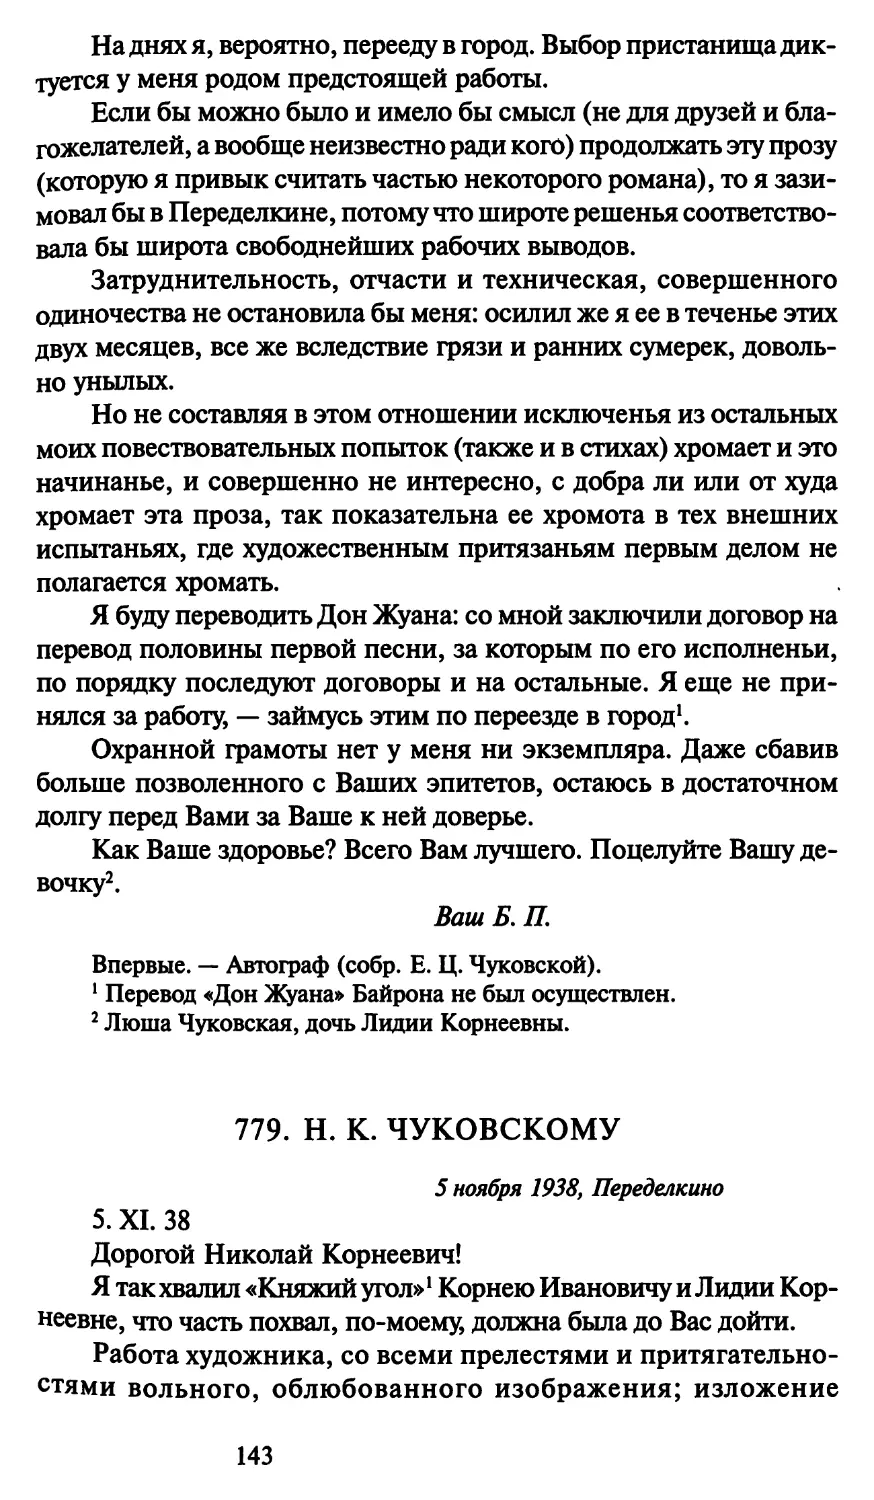 779. Н. К. Чуковскому 5 ноября 1938